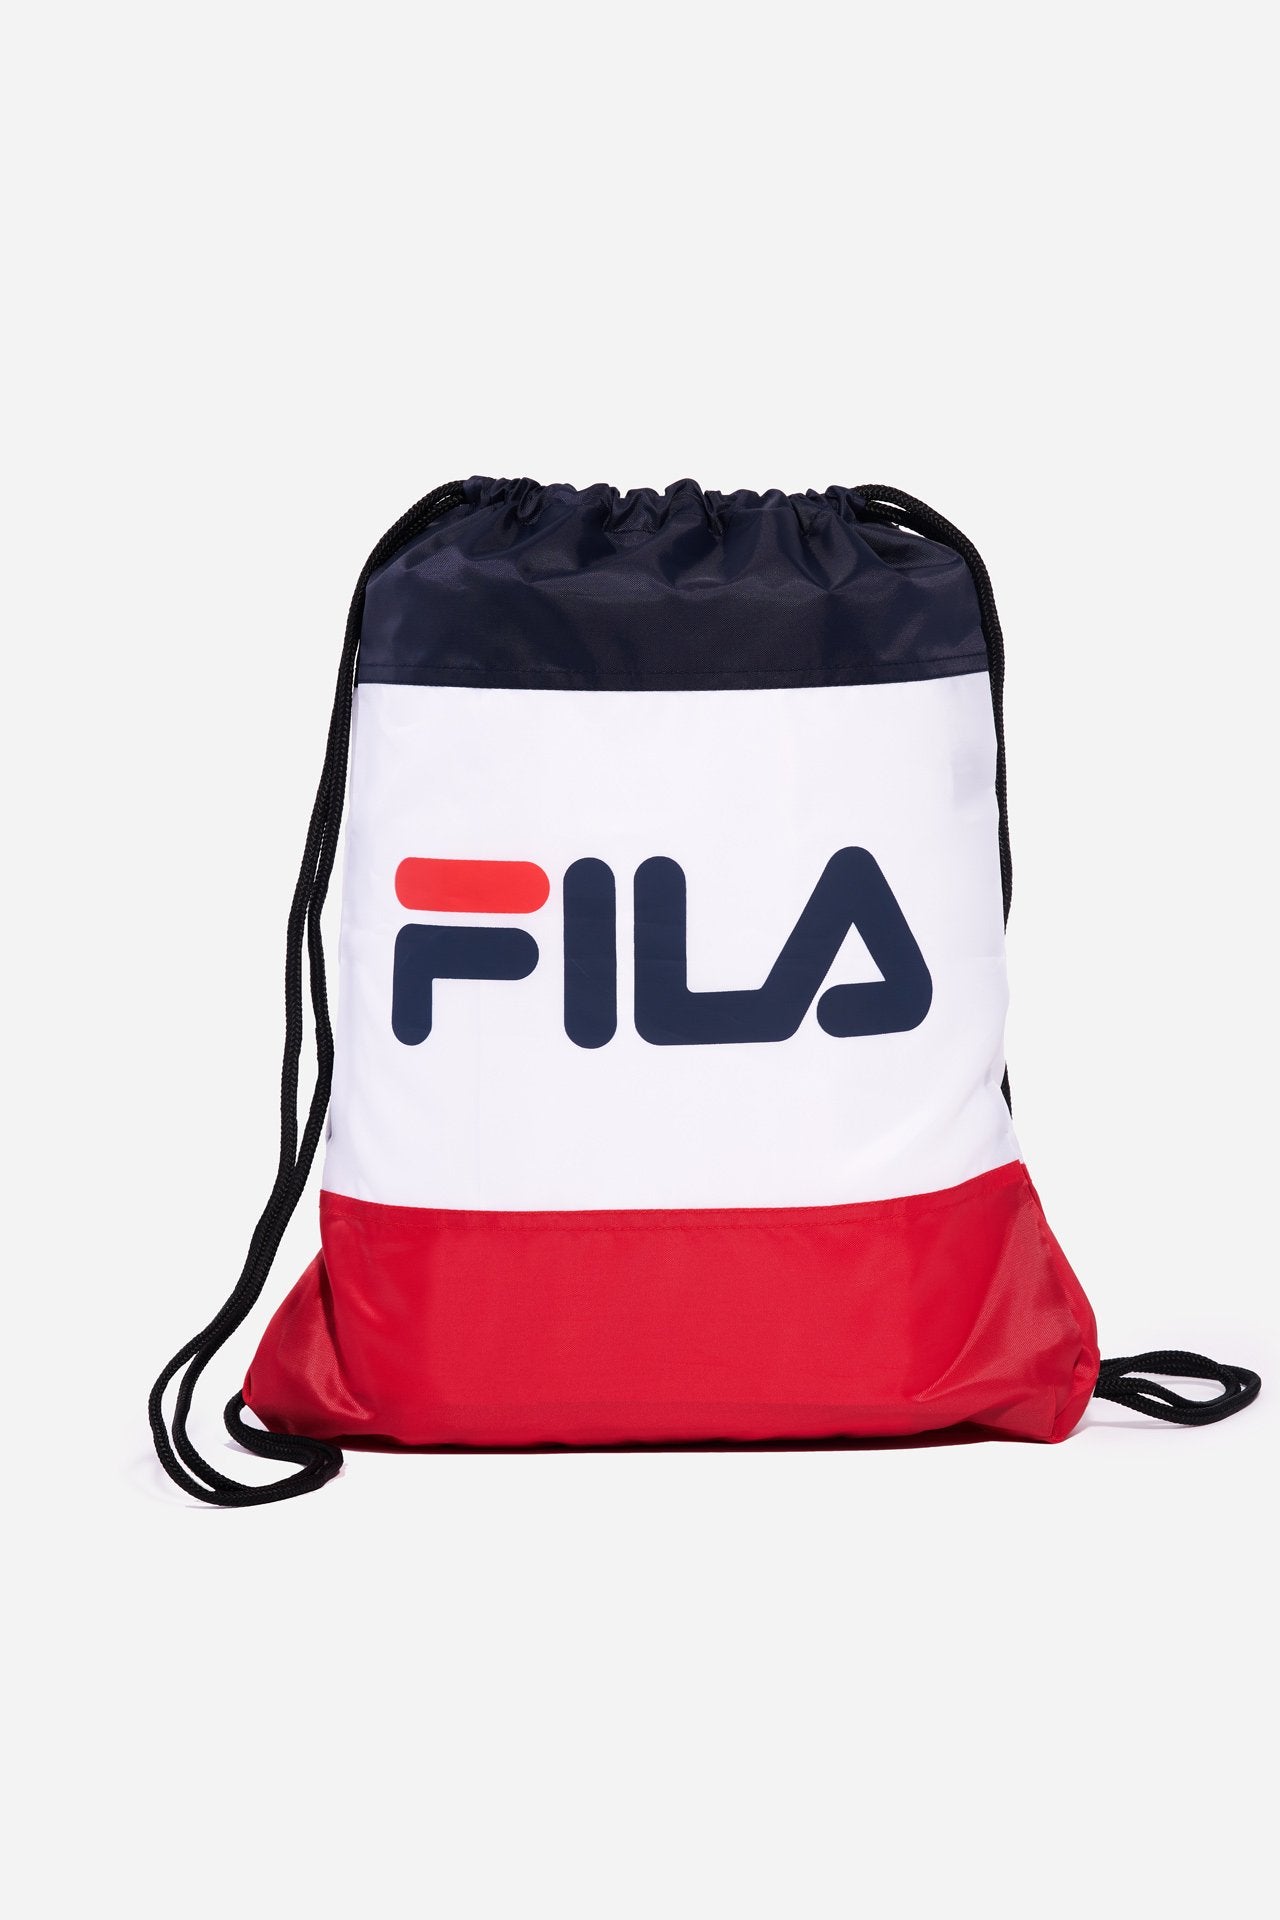 Fila Gym Bag Bags -